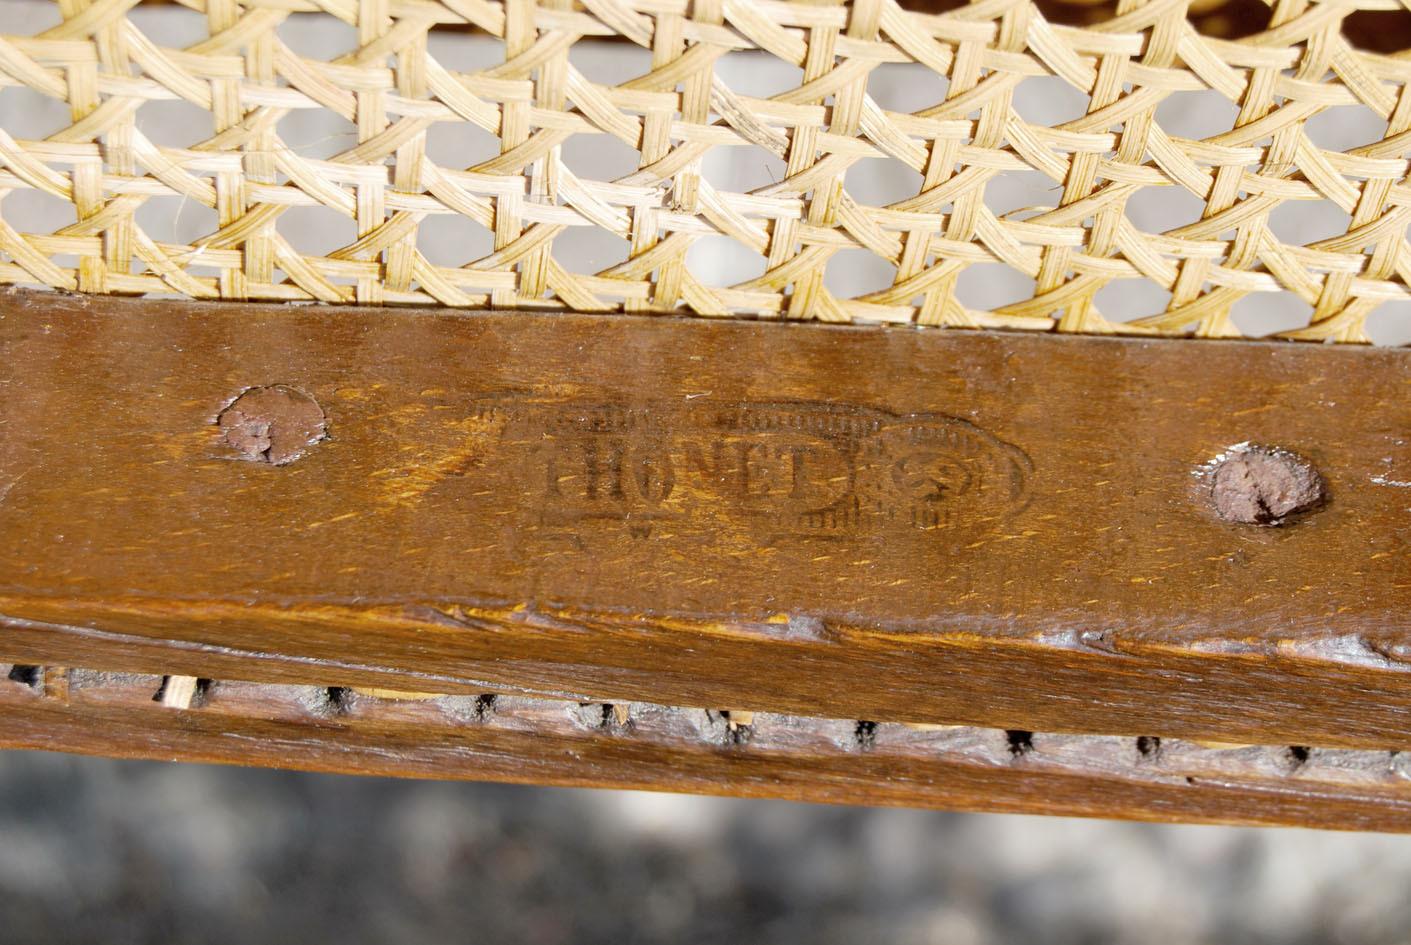 Questa bellissima sedia antica da barbiere risale alla seconda metà del 1800.
Originale THONET, con il marchio a fuoco sulla struttura della seduta, la sedia è in faggio con seduta e schienale in paglia di Vienna. La sua caratteristica è la